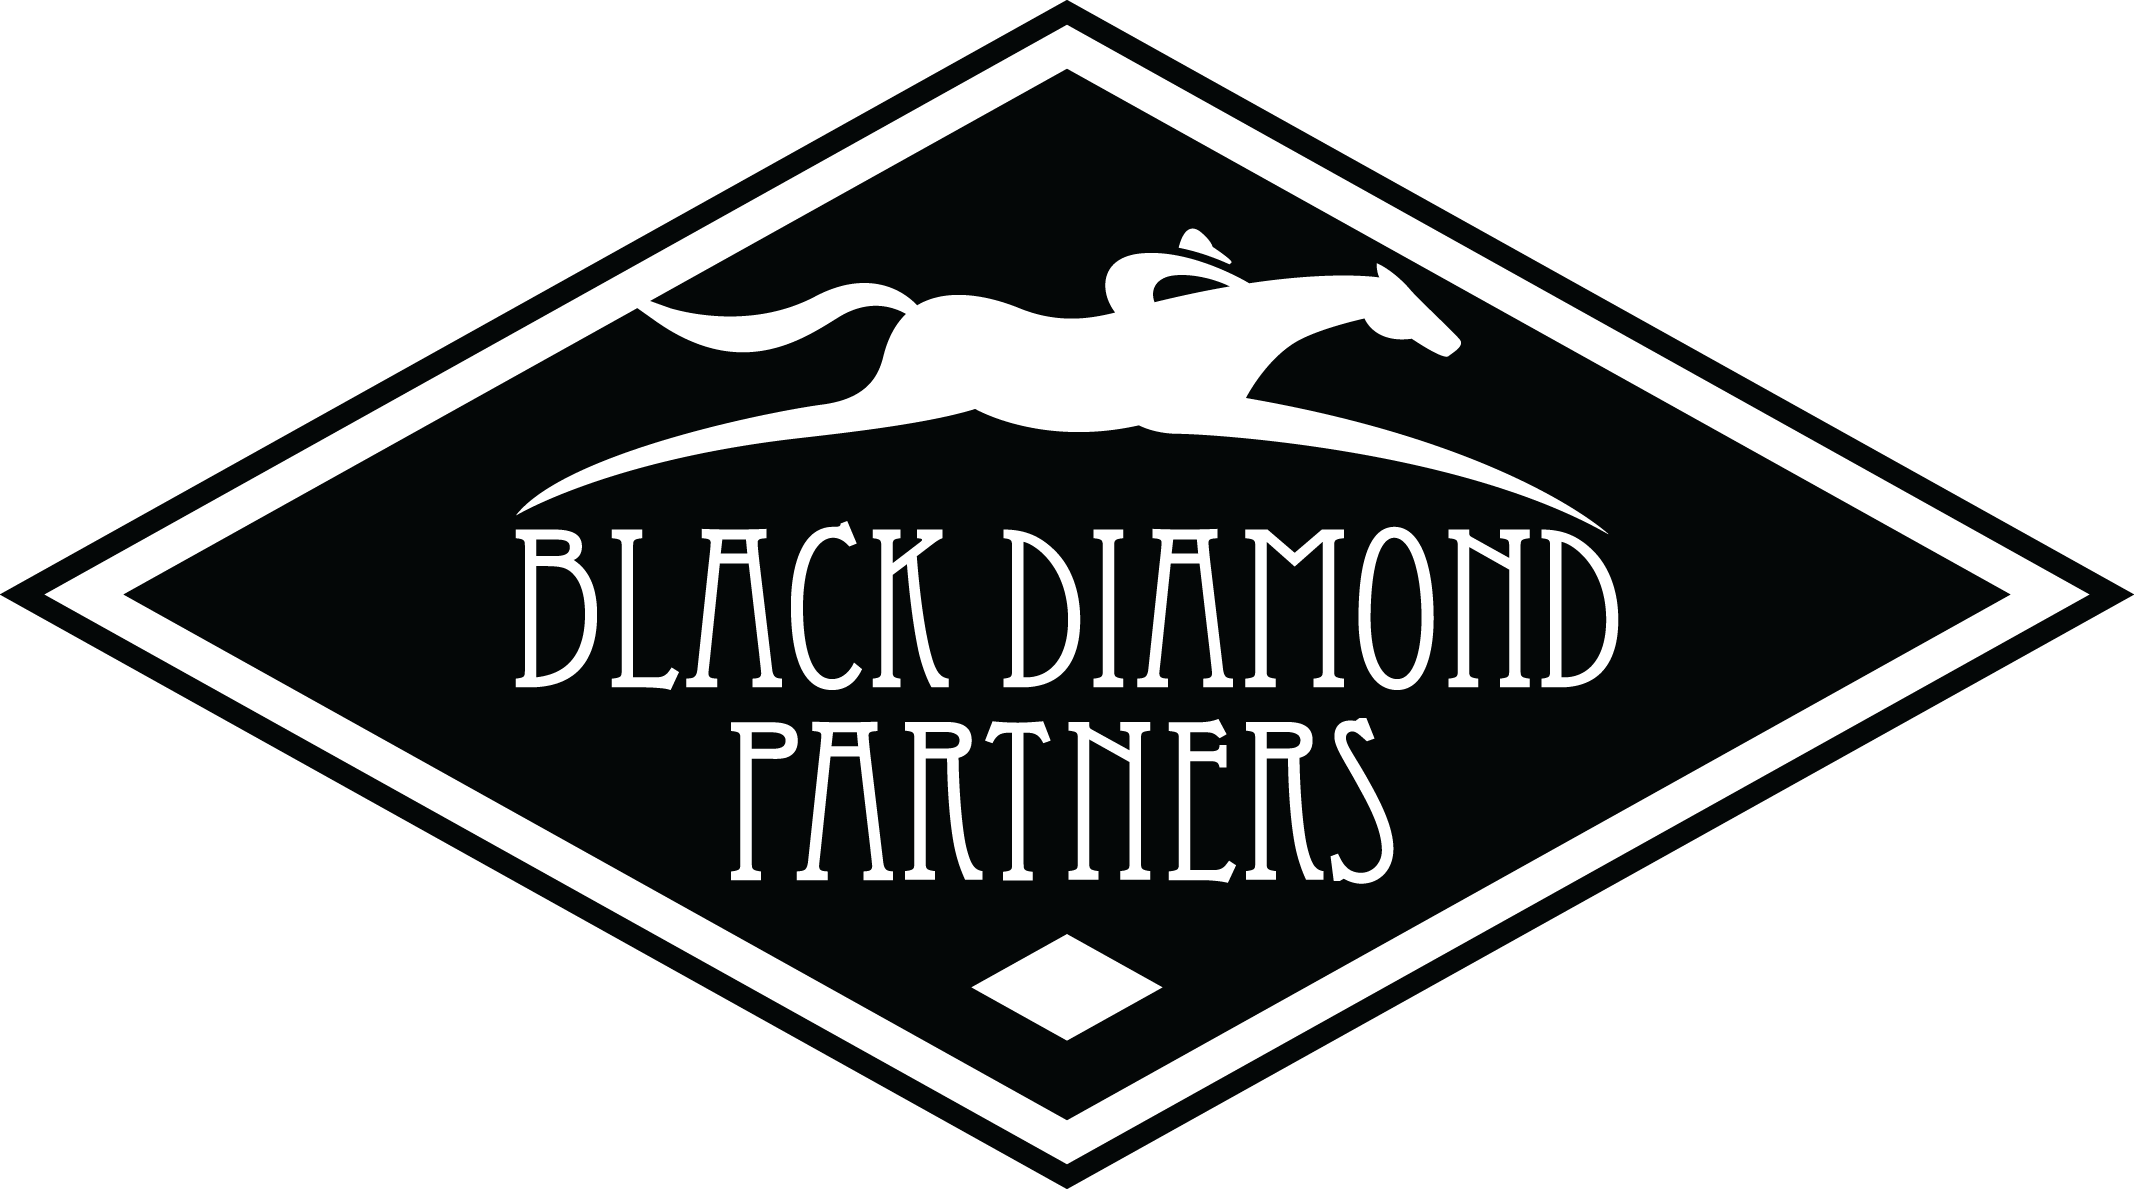 Black Diamond Partners